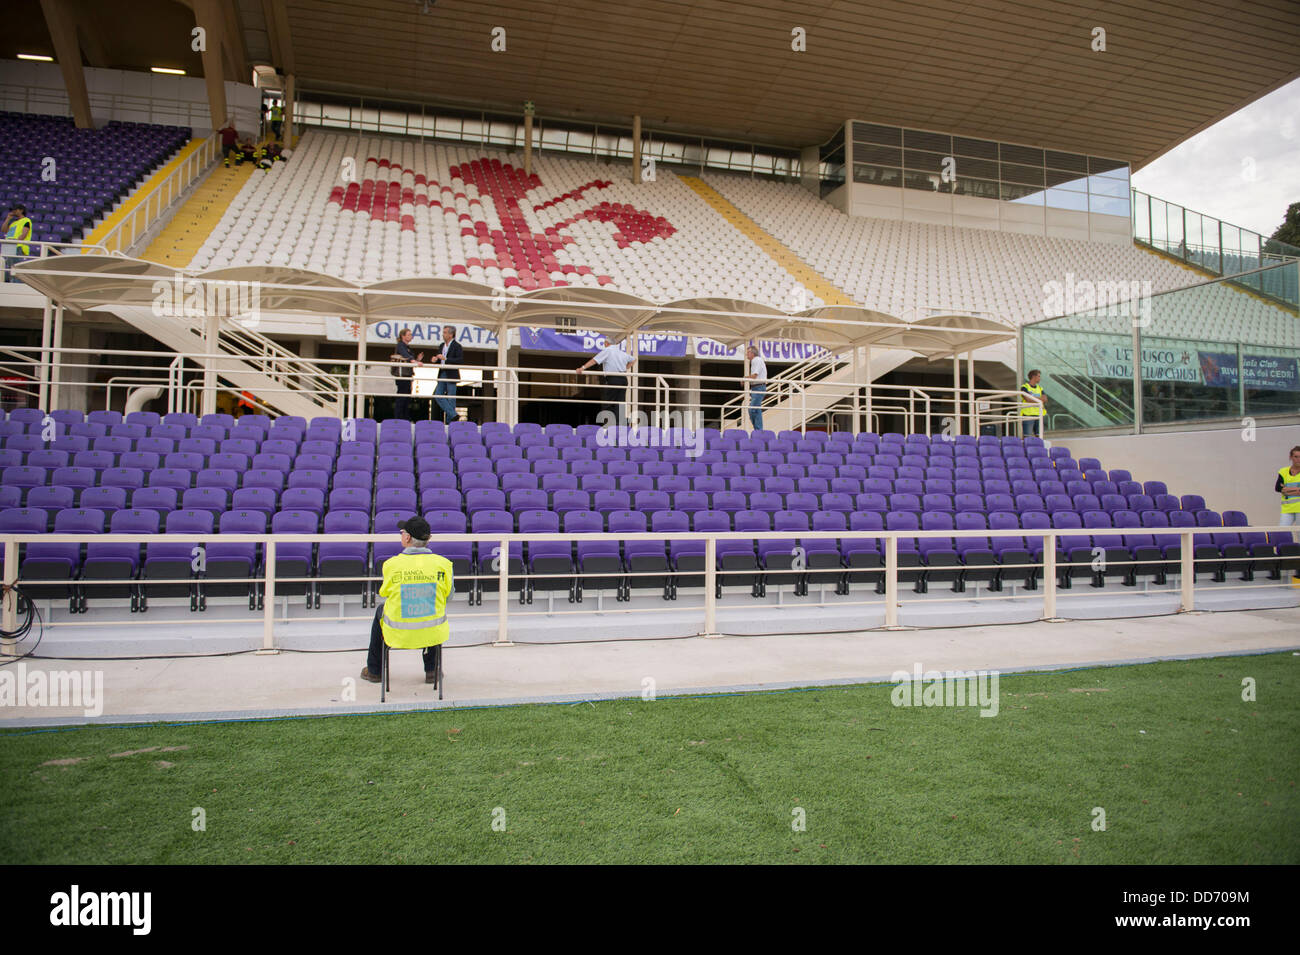 Vista generale, 26 agosto 2013 - Calcio : nuovo stadio senza barriere  durante l'italiano 'Serie A' match